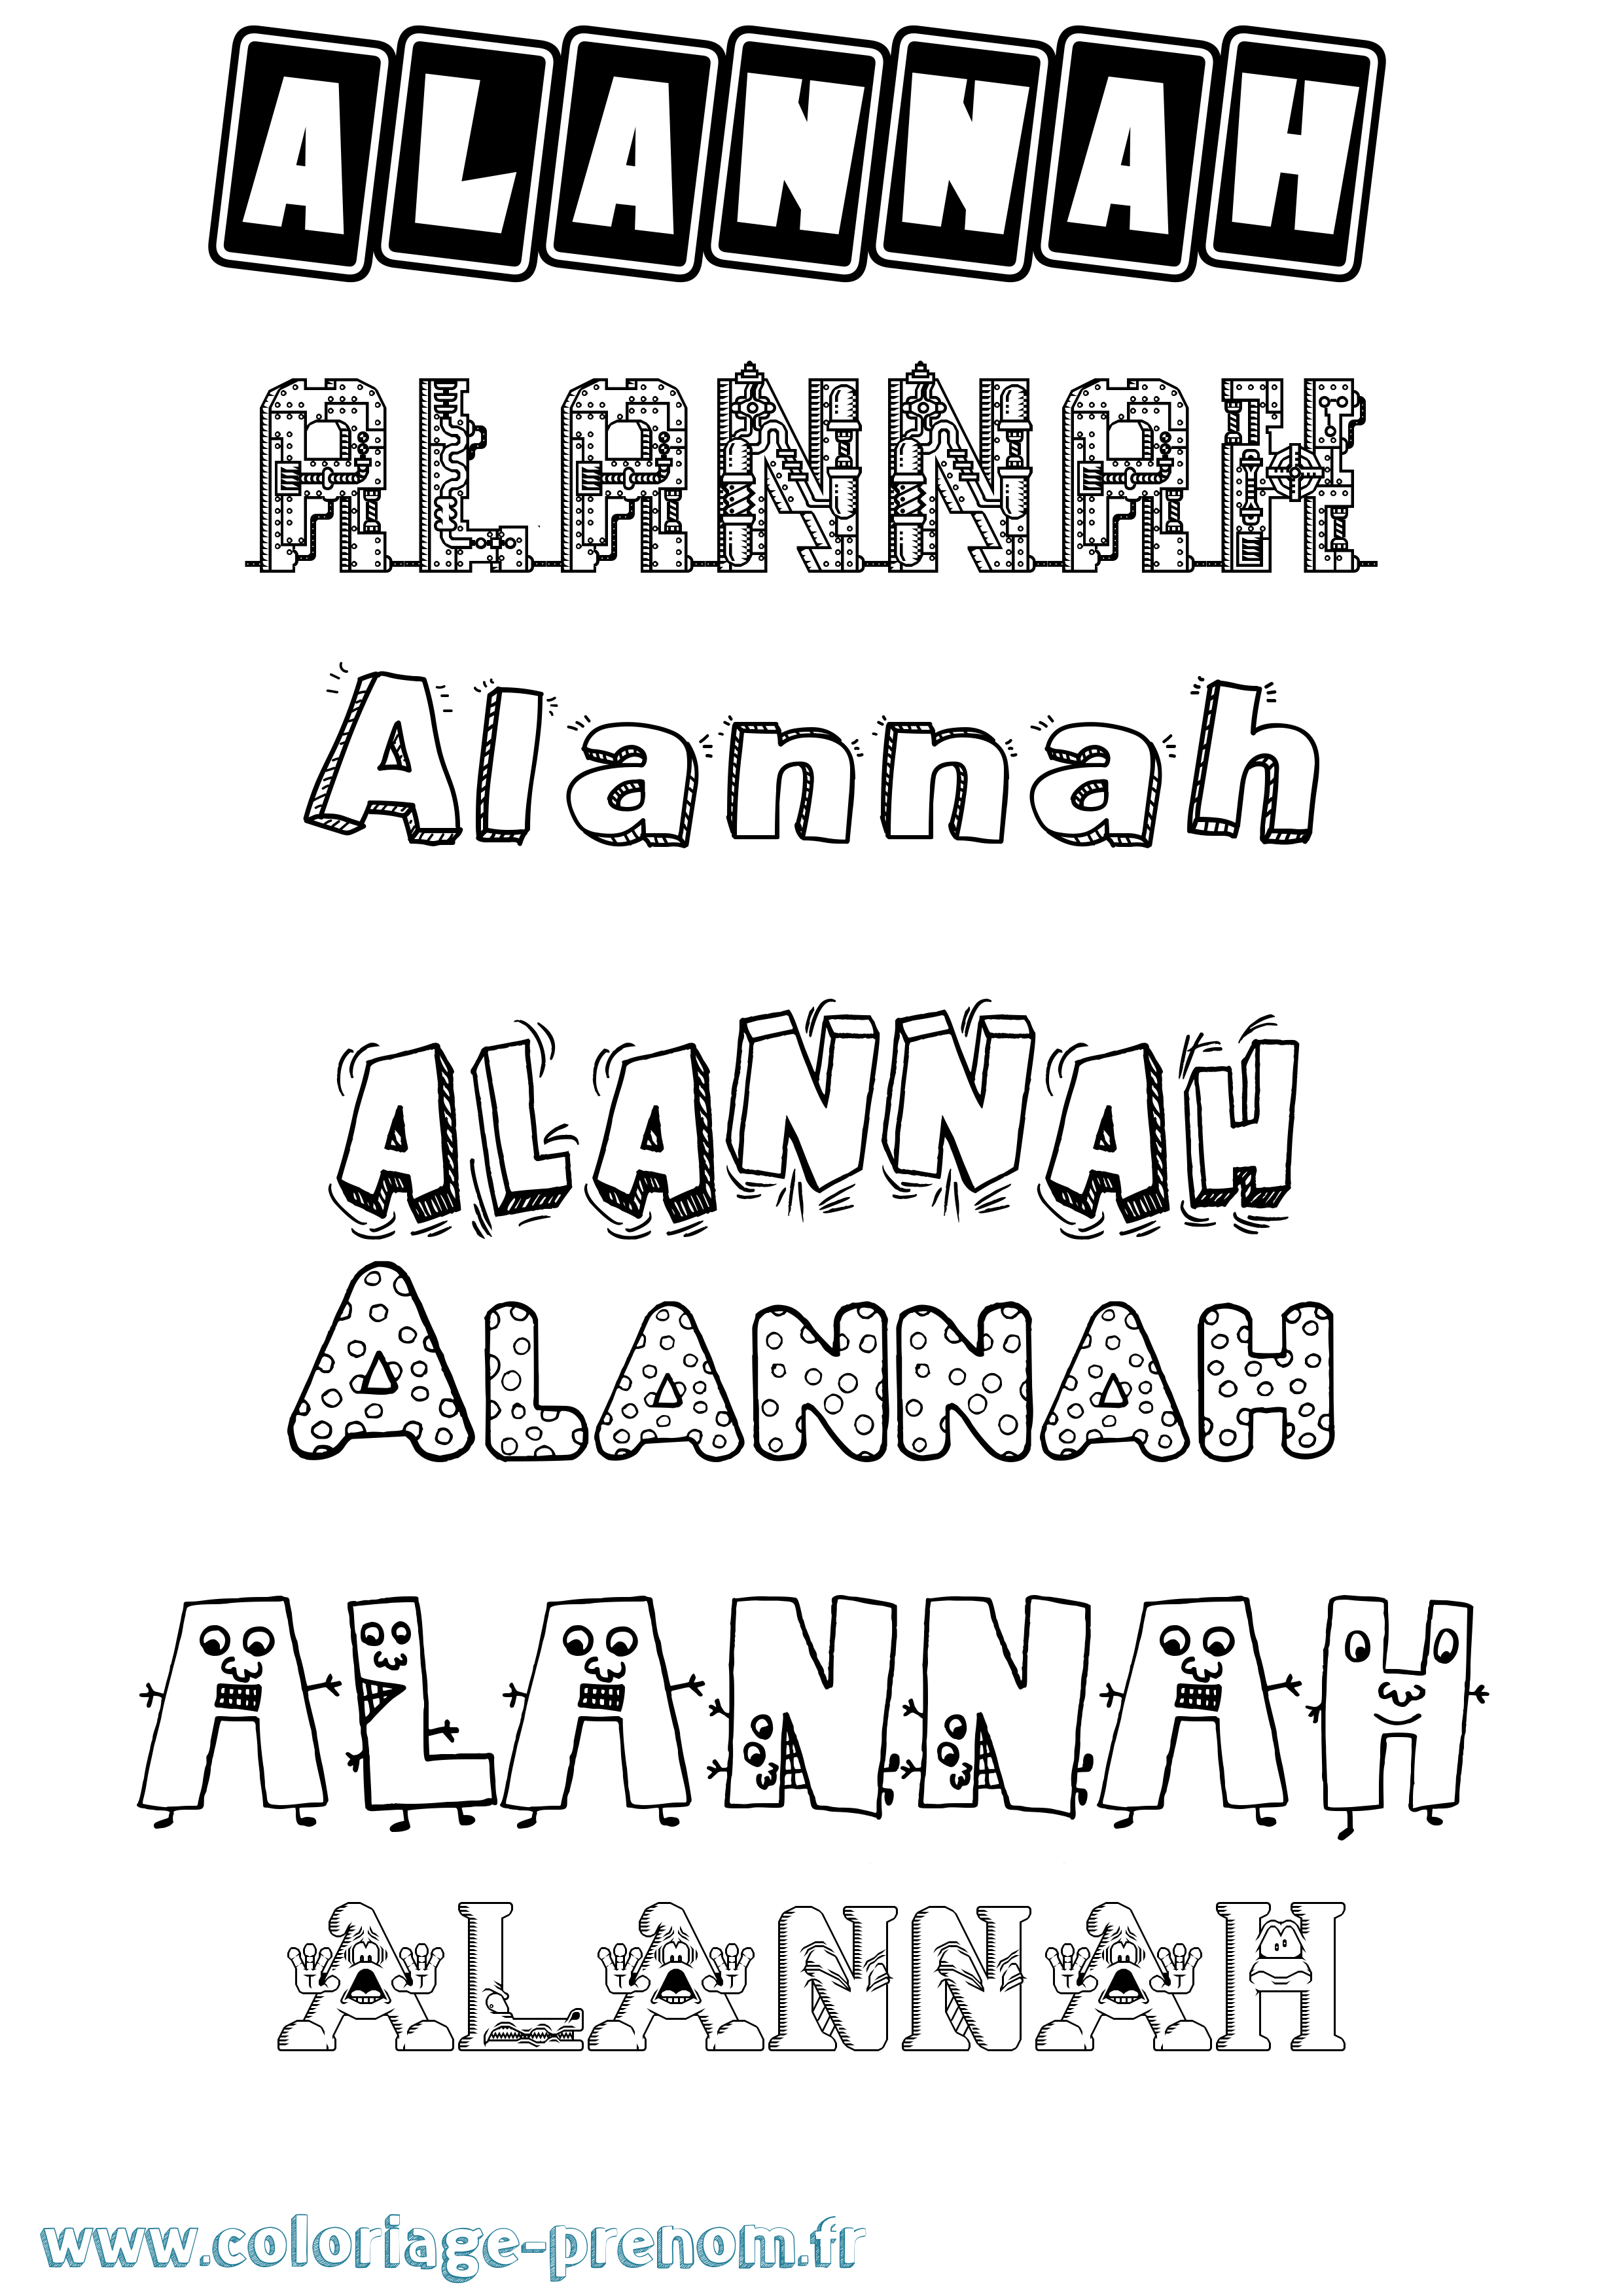 Coloriage prénom Alannah Fun